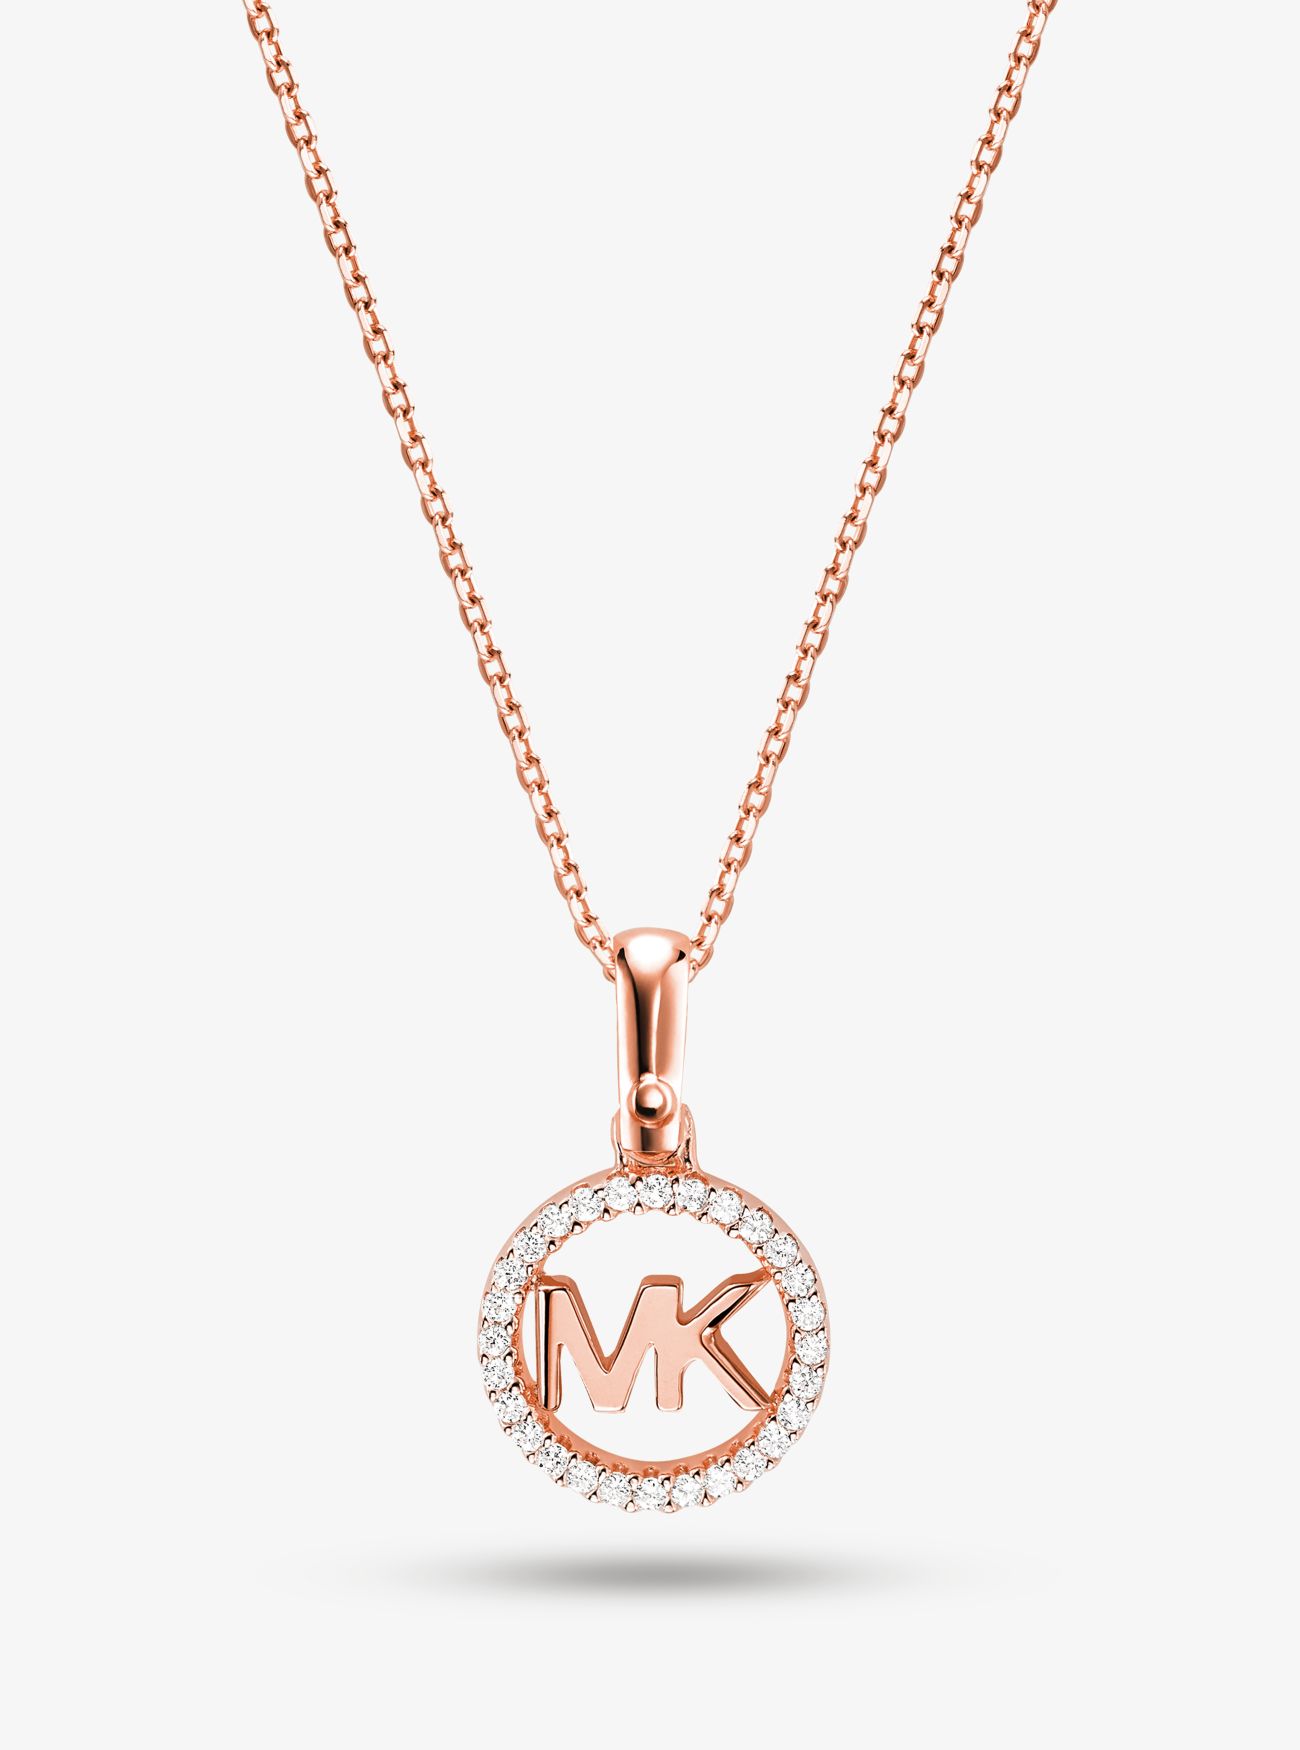 MKCollar con chapado en metales preciosos adorno de logotipo e incrustaciones - Dorado Rosa(Dorado Rosa) - Michael Kors